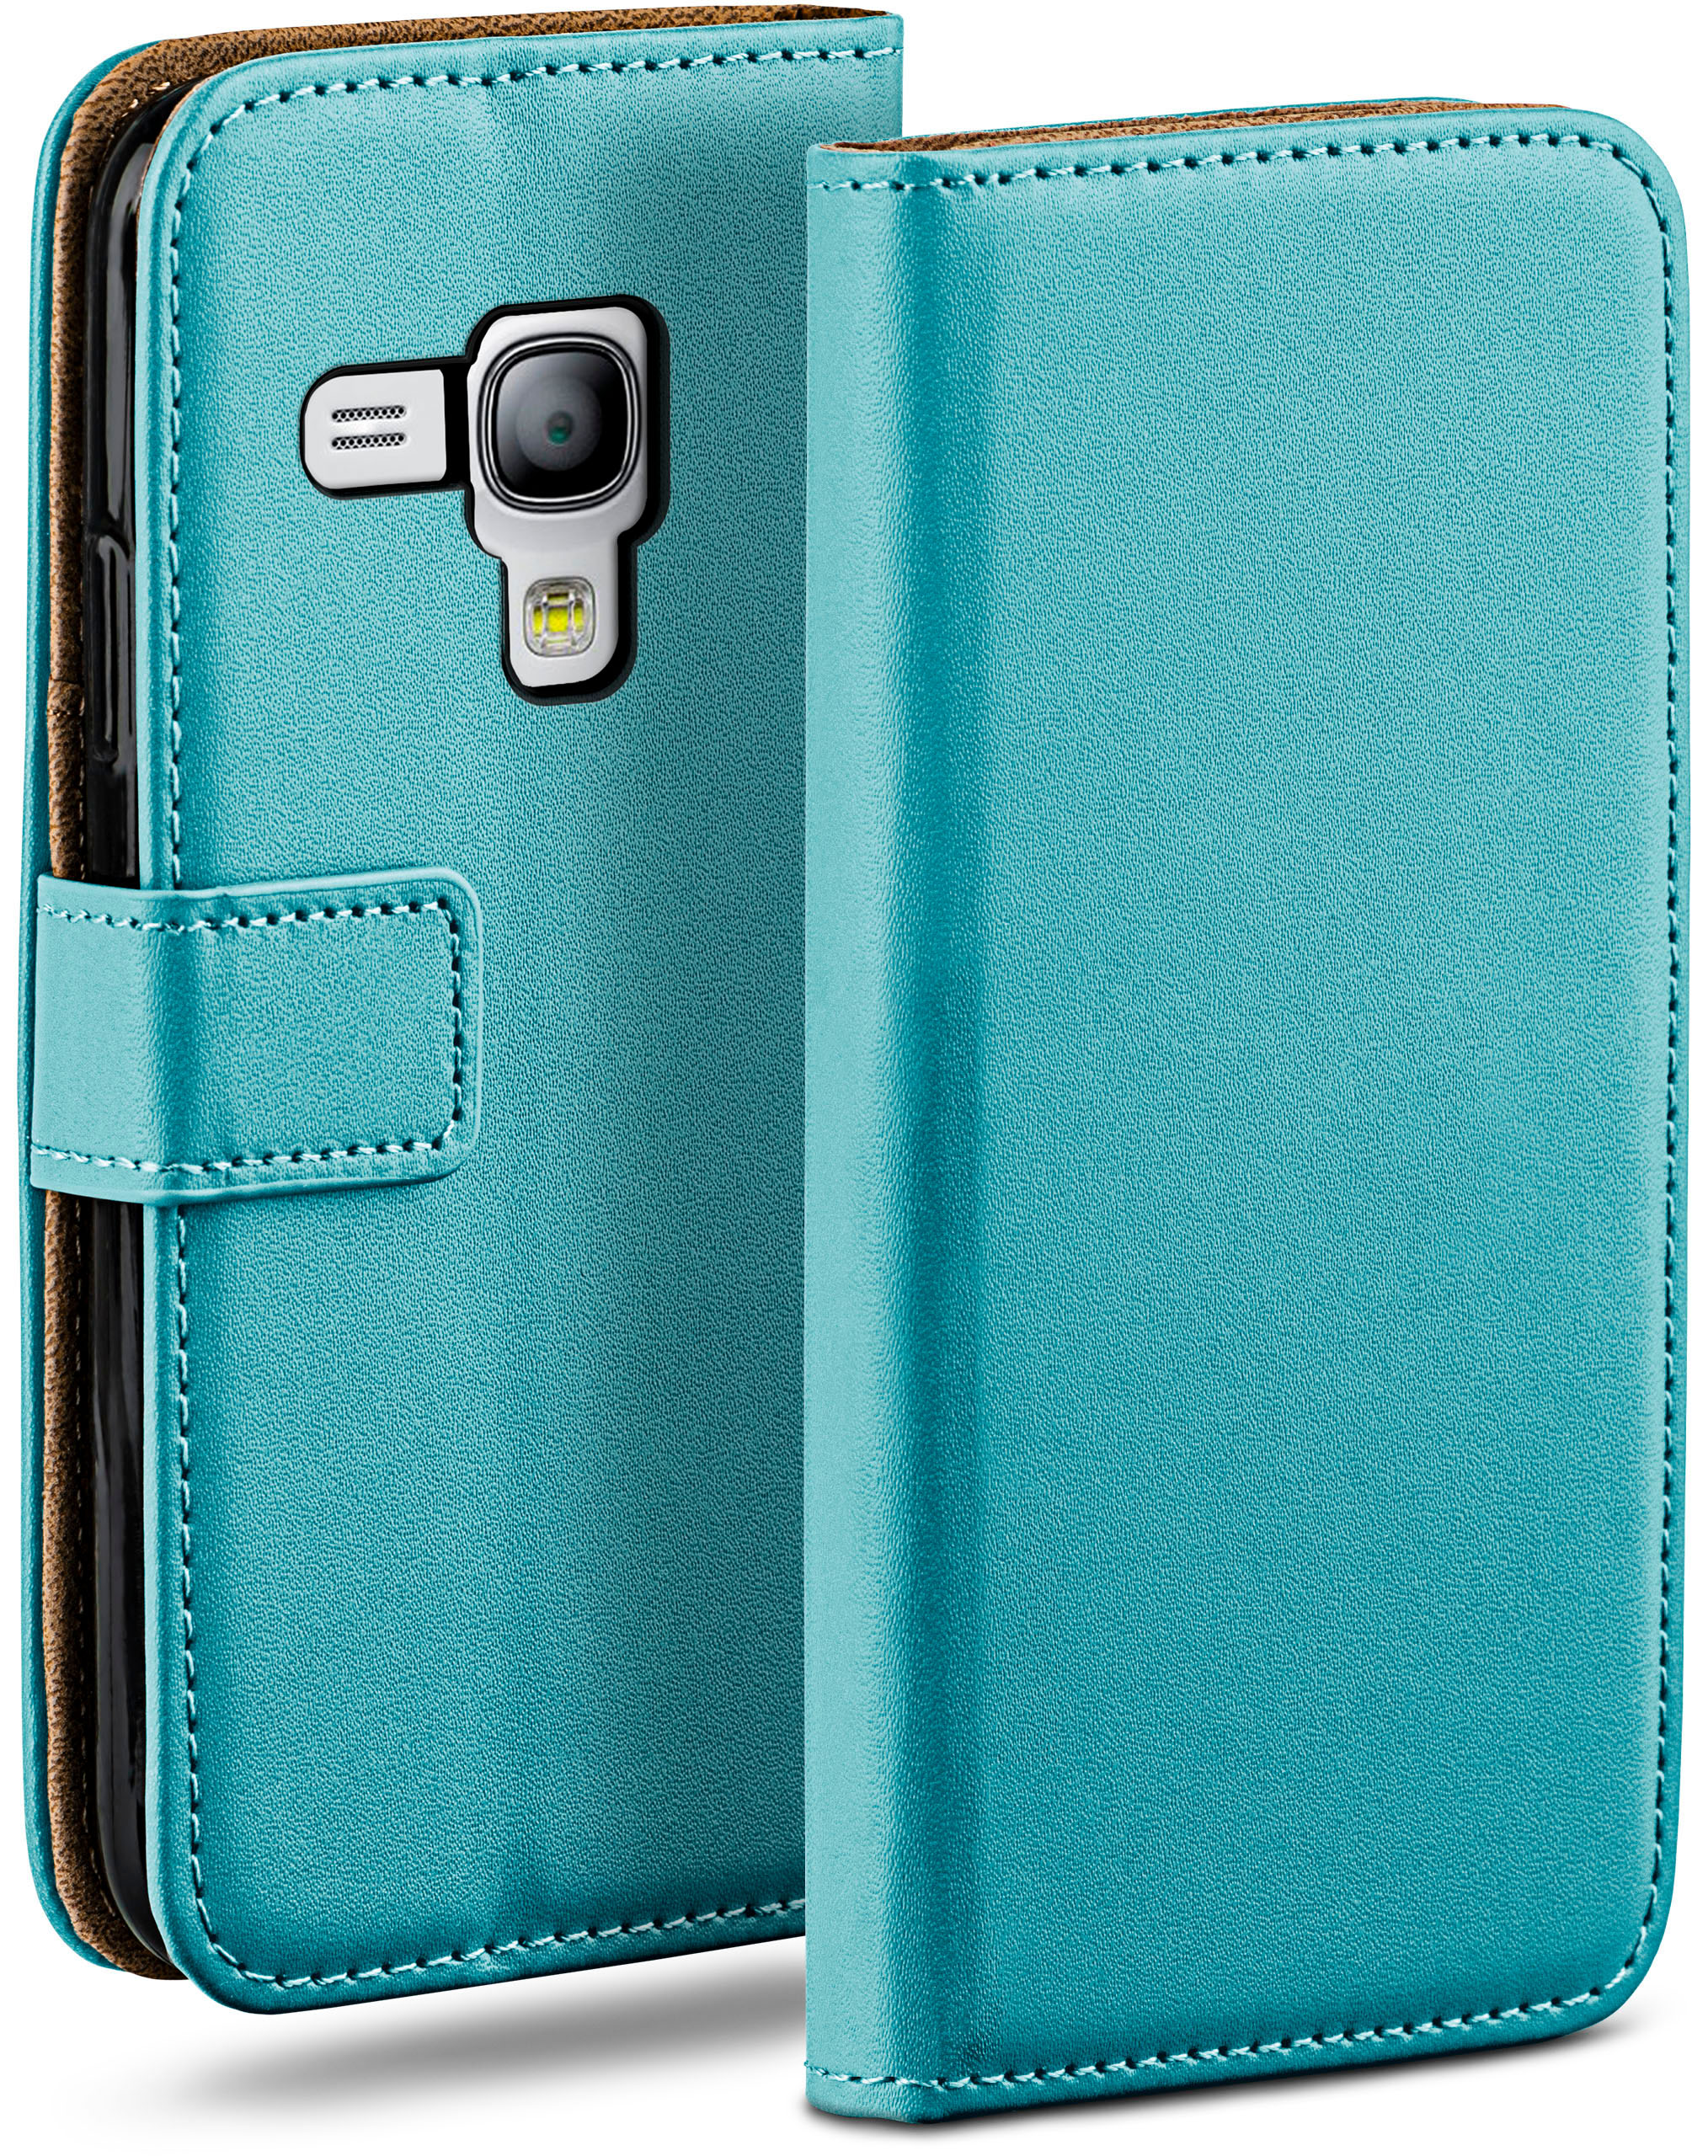 Aqua-Cyan Mini, Book Bookcover, MOEX Case, Samsung, S3 Galaxy